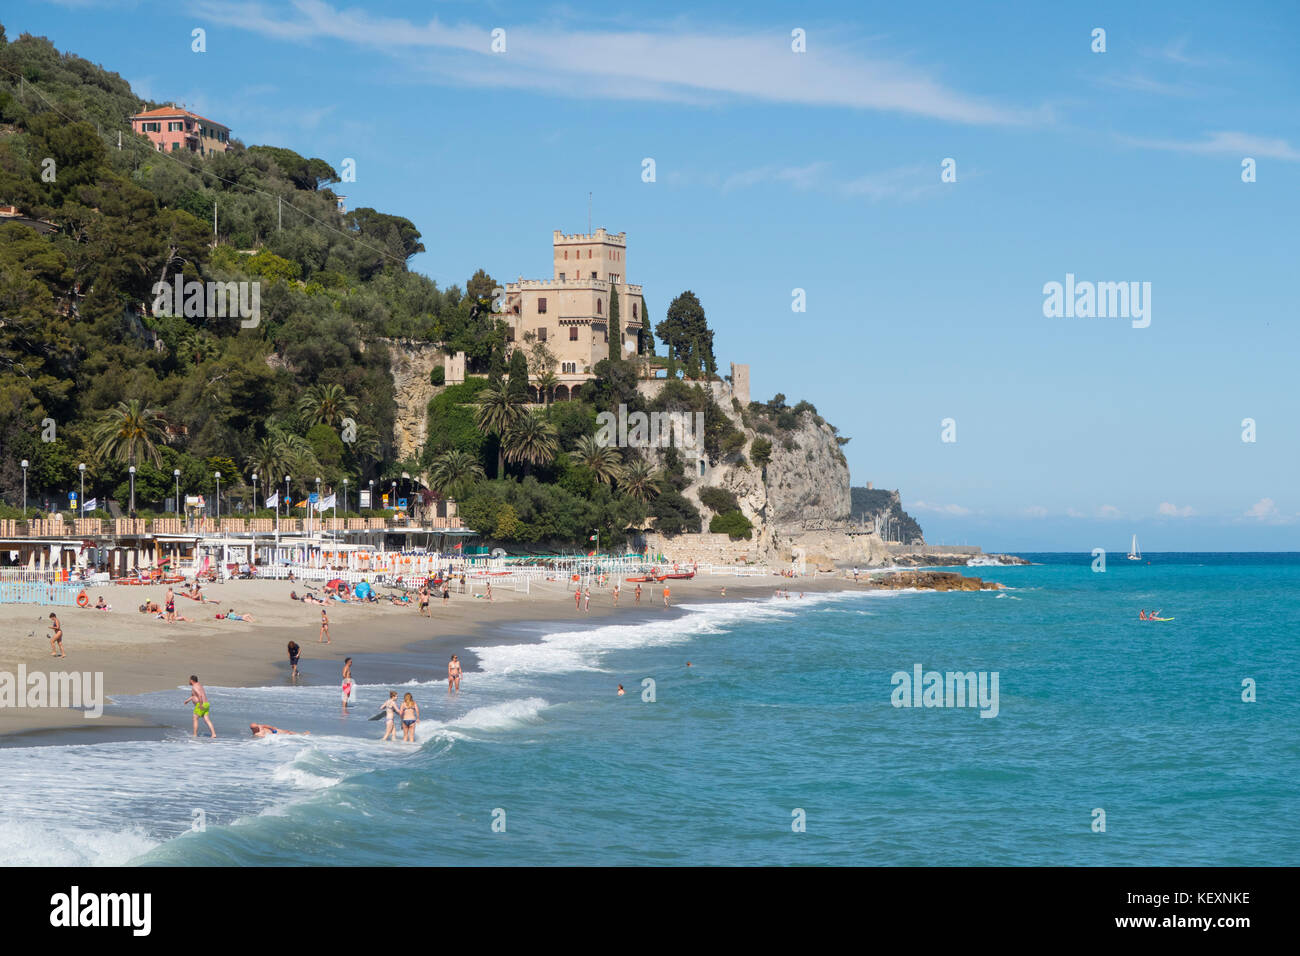 La spiaggia di finale Marina nella regione turistica italiana finale Ligure al Mar Mediterraneo. Foto Stock